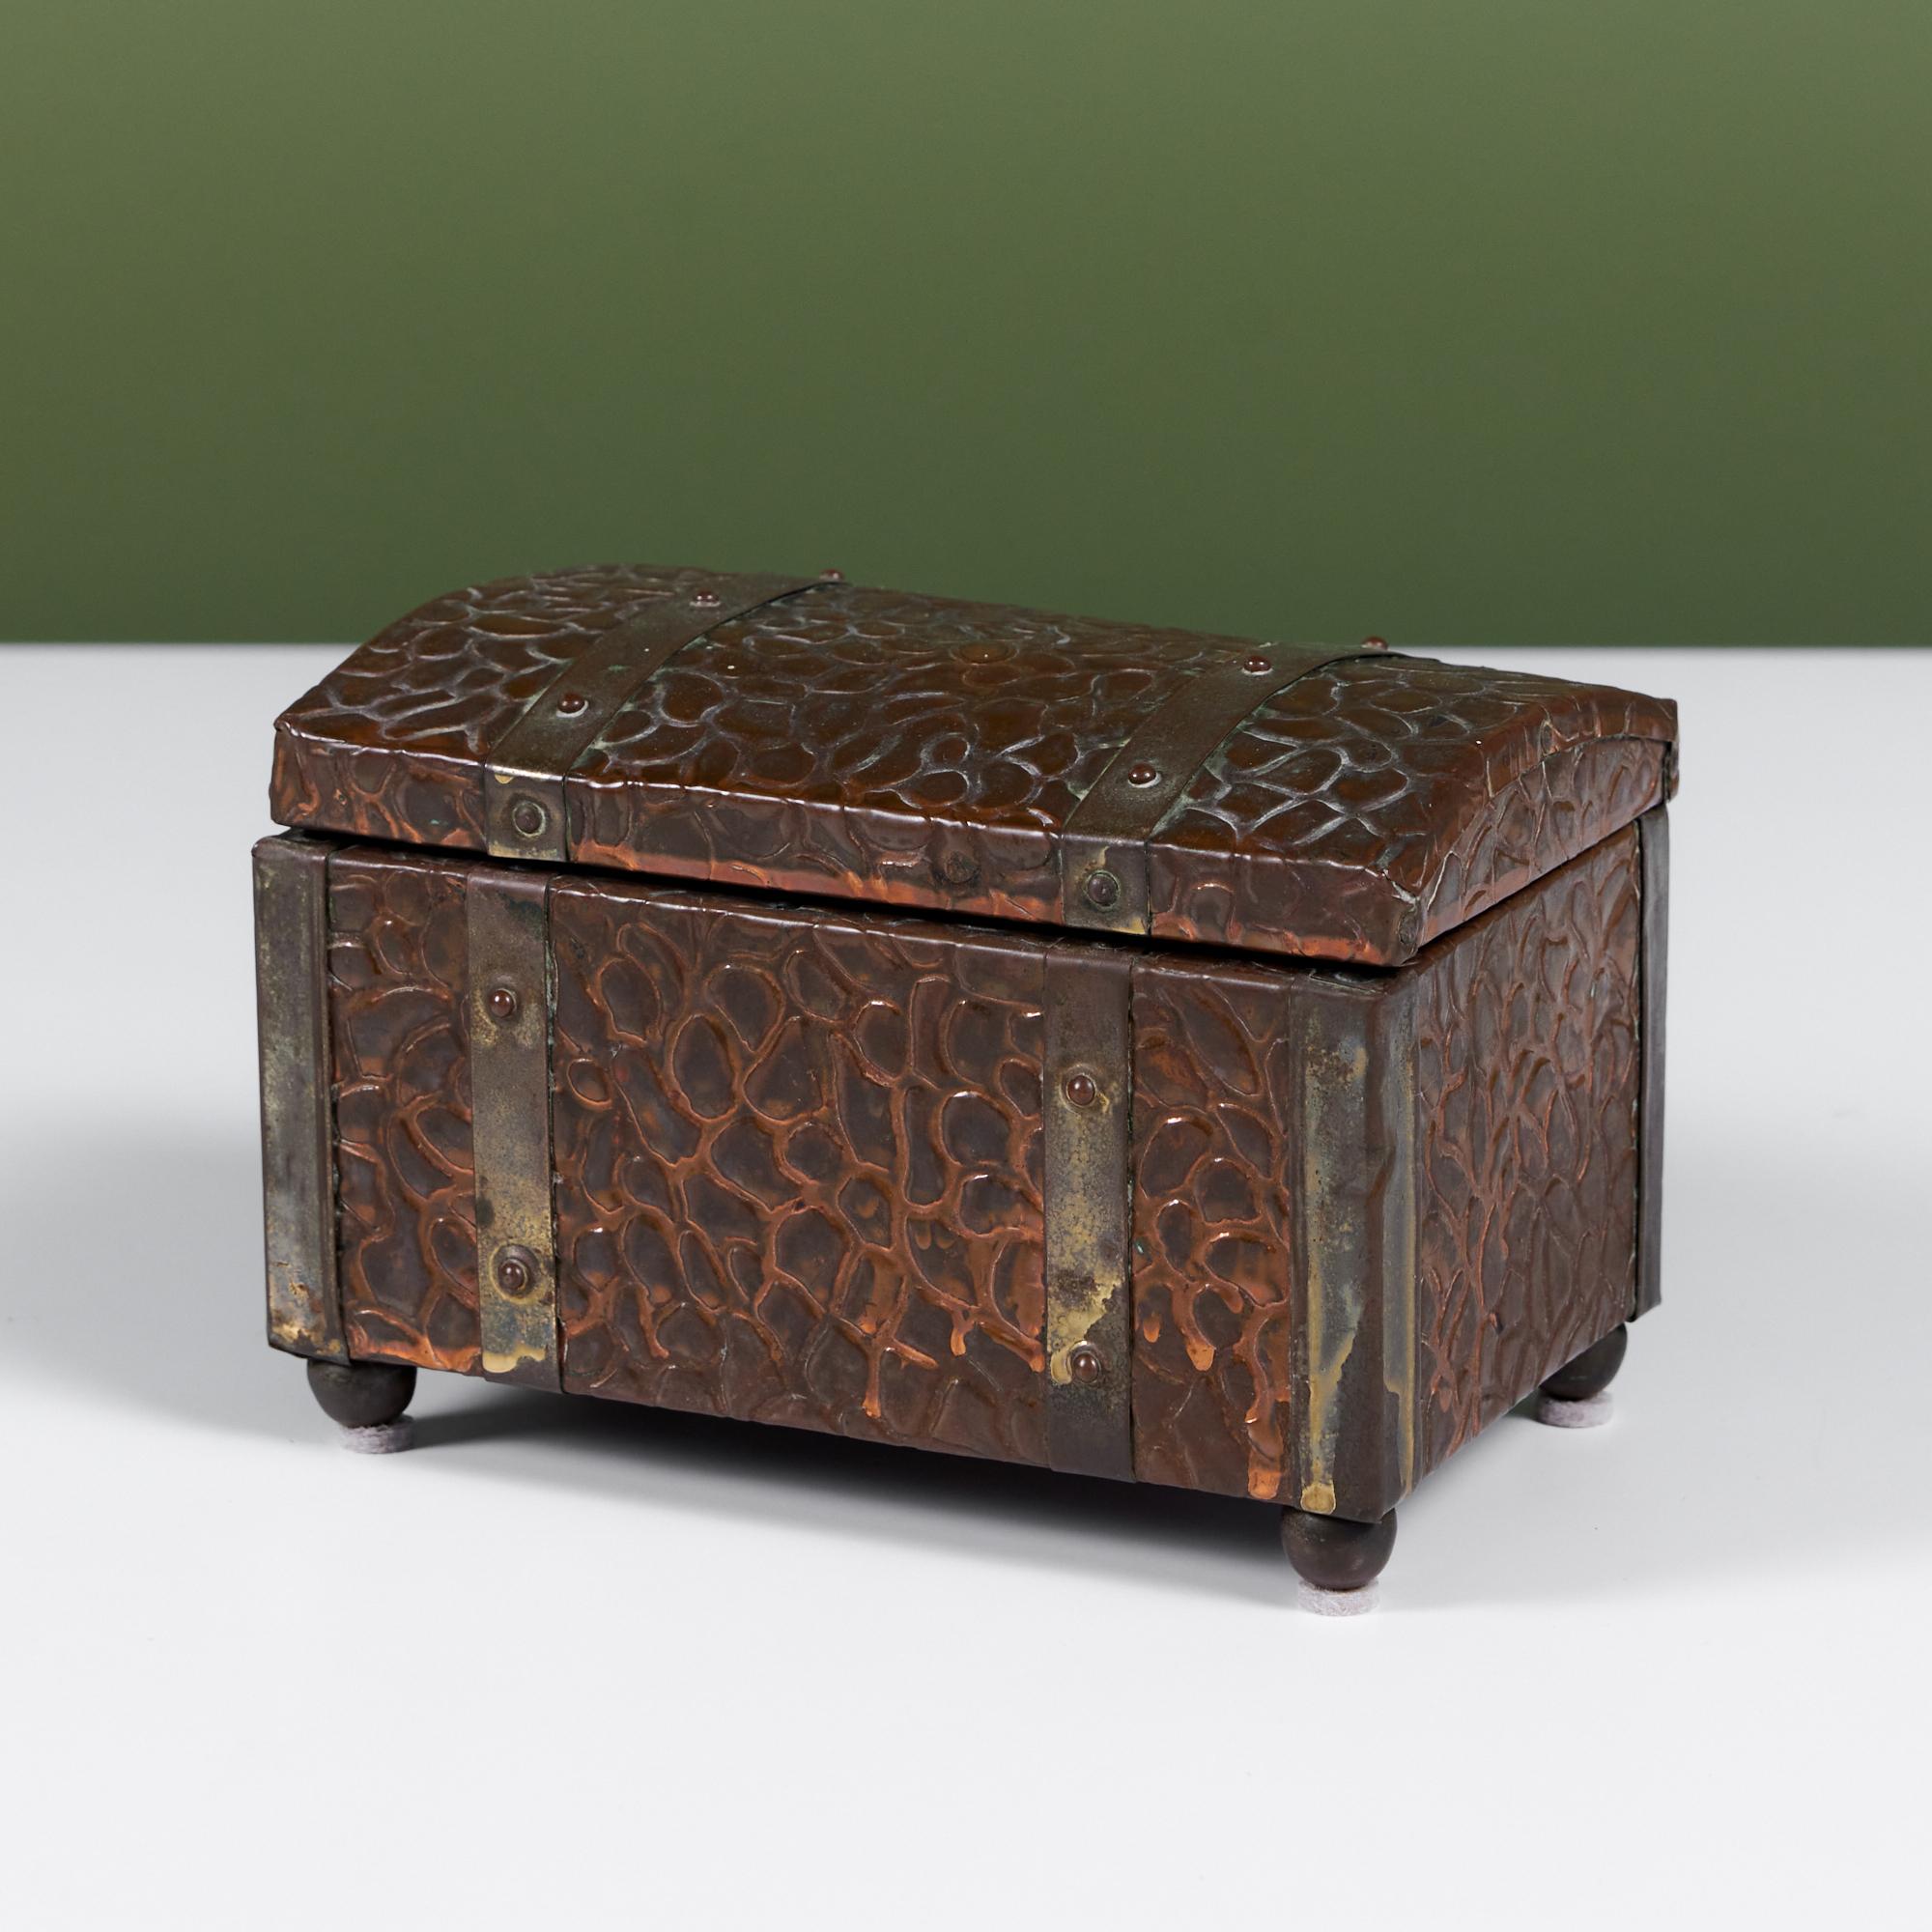 Boîte en cuivre texturé avec détails en laiton. L'extérieur de la boîte présente une texture semblable à celle des galets, parfaitement patinée, avec des charnières en laiton, des pieds en forme de boule et des détails. La boîte à charnières est